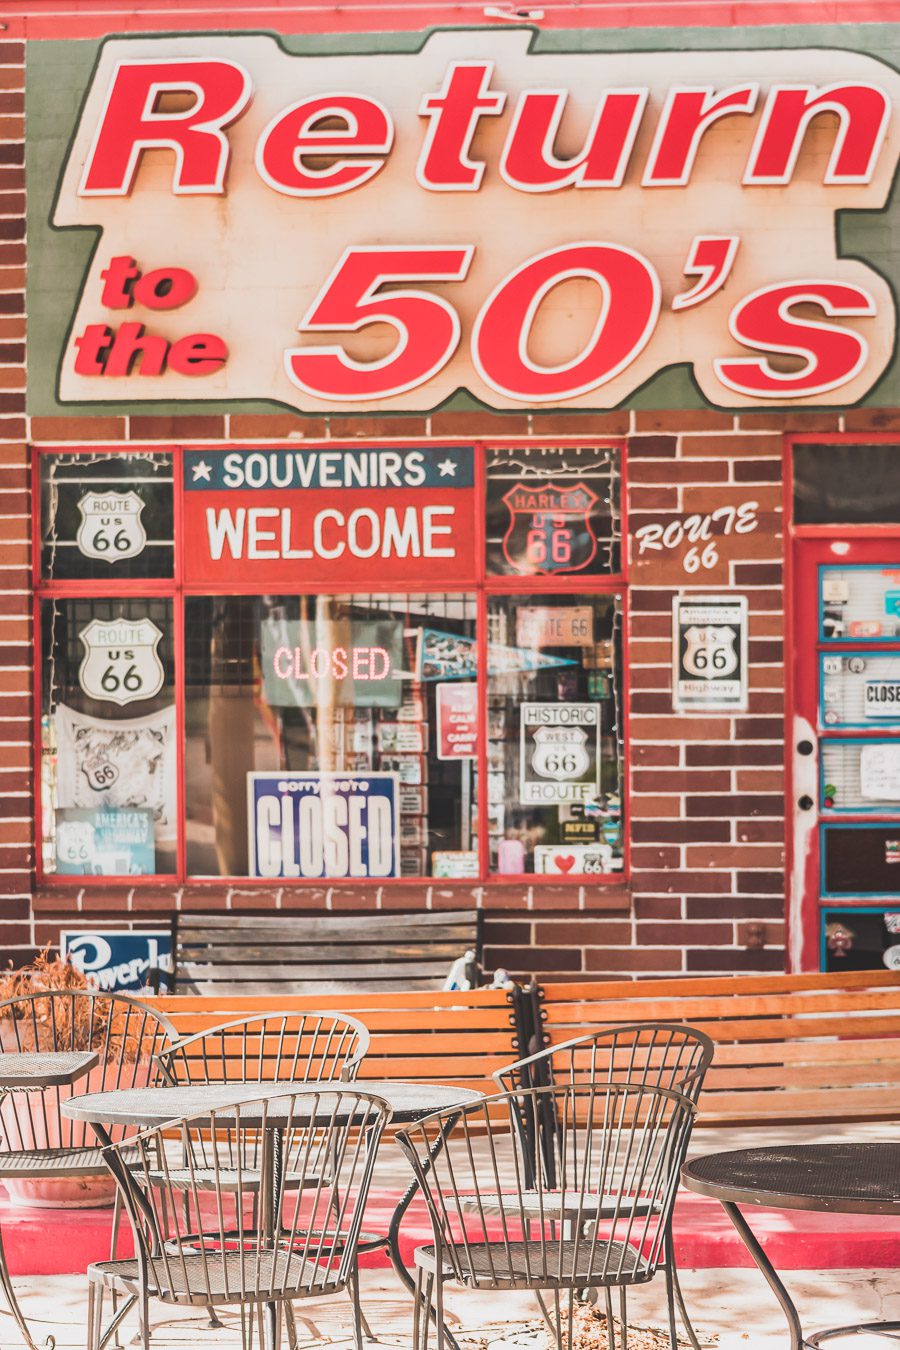 Faites un voyage sur la Route 66 en van - l'une des routes les plus emblématiques de l'histoire américaine ! Du Midwest au Sud-Ouest, la Route 66 est un symbole d'aventure et de liberté depuis des générations, offrant une expérience de voyage unique et inoubliable. Les voyageurs peuvent découvrir sa culture diversifiée et ses joyaux cachés. Que vous recherchiez un long voyage en voiture ou en van ou une escapade rapide, la Route 66 est une idée originale pour un voyage en été.